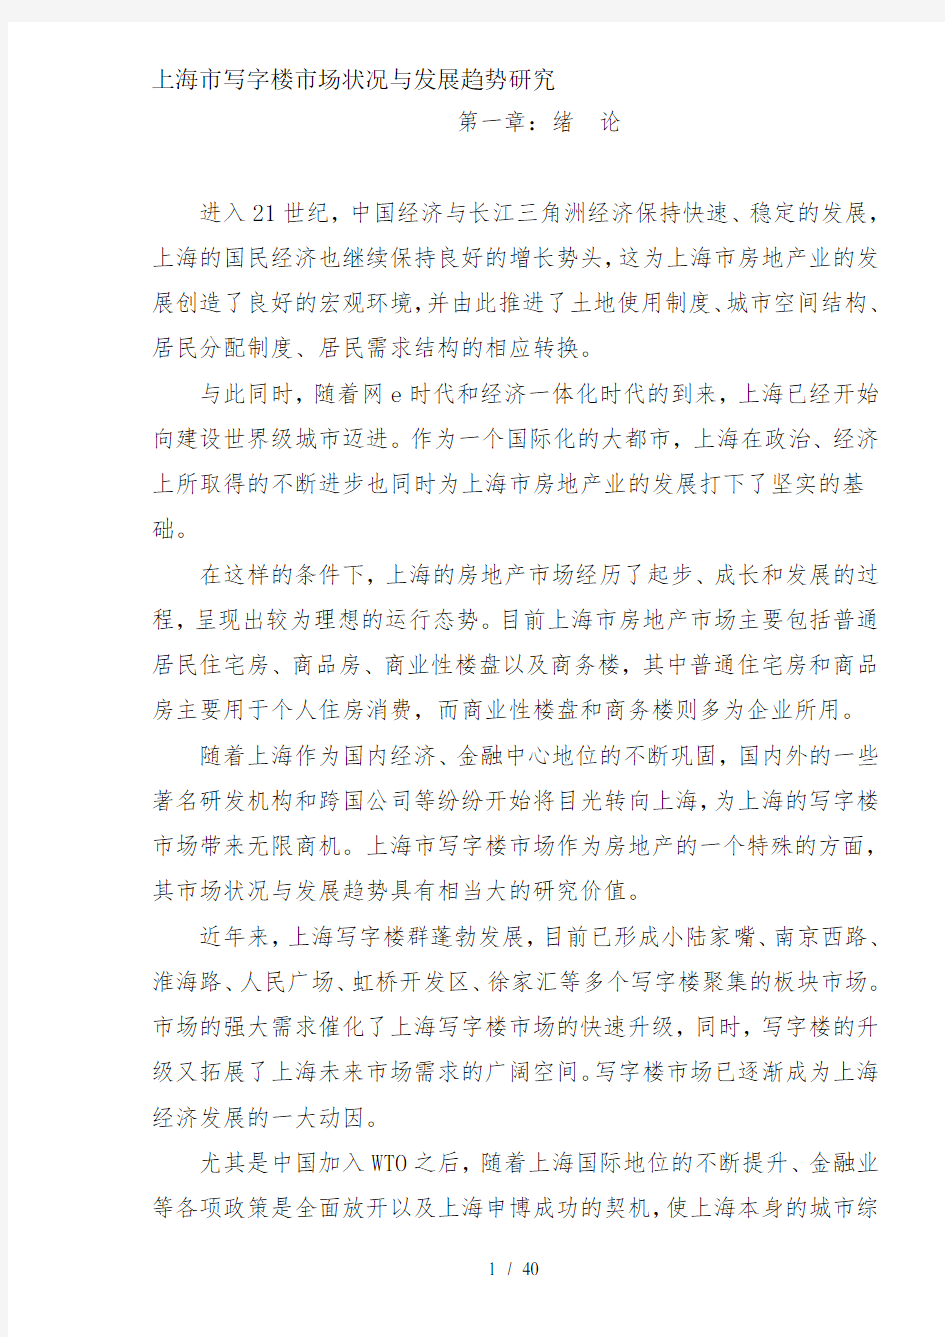 上海市写字楼市场状况与发展趋势研究